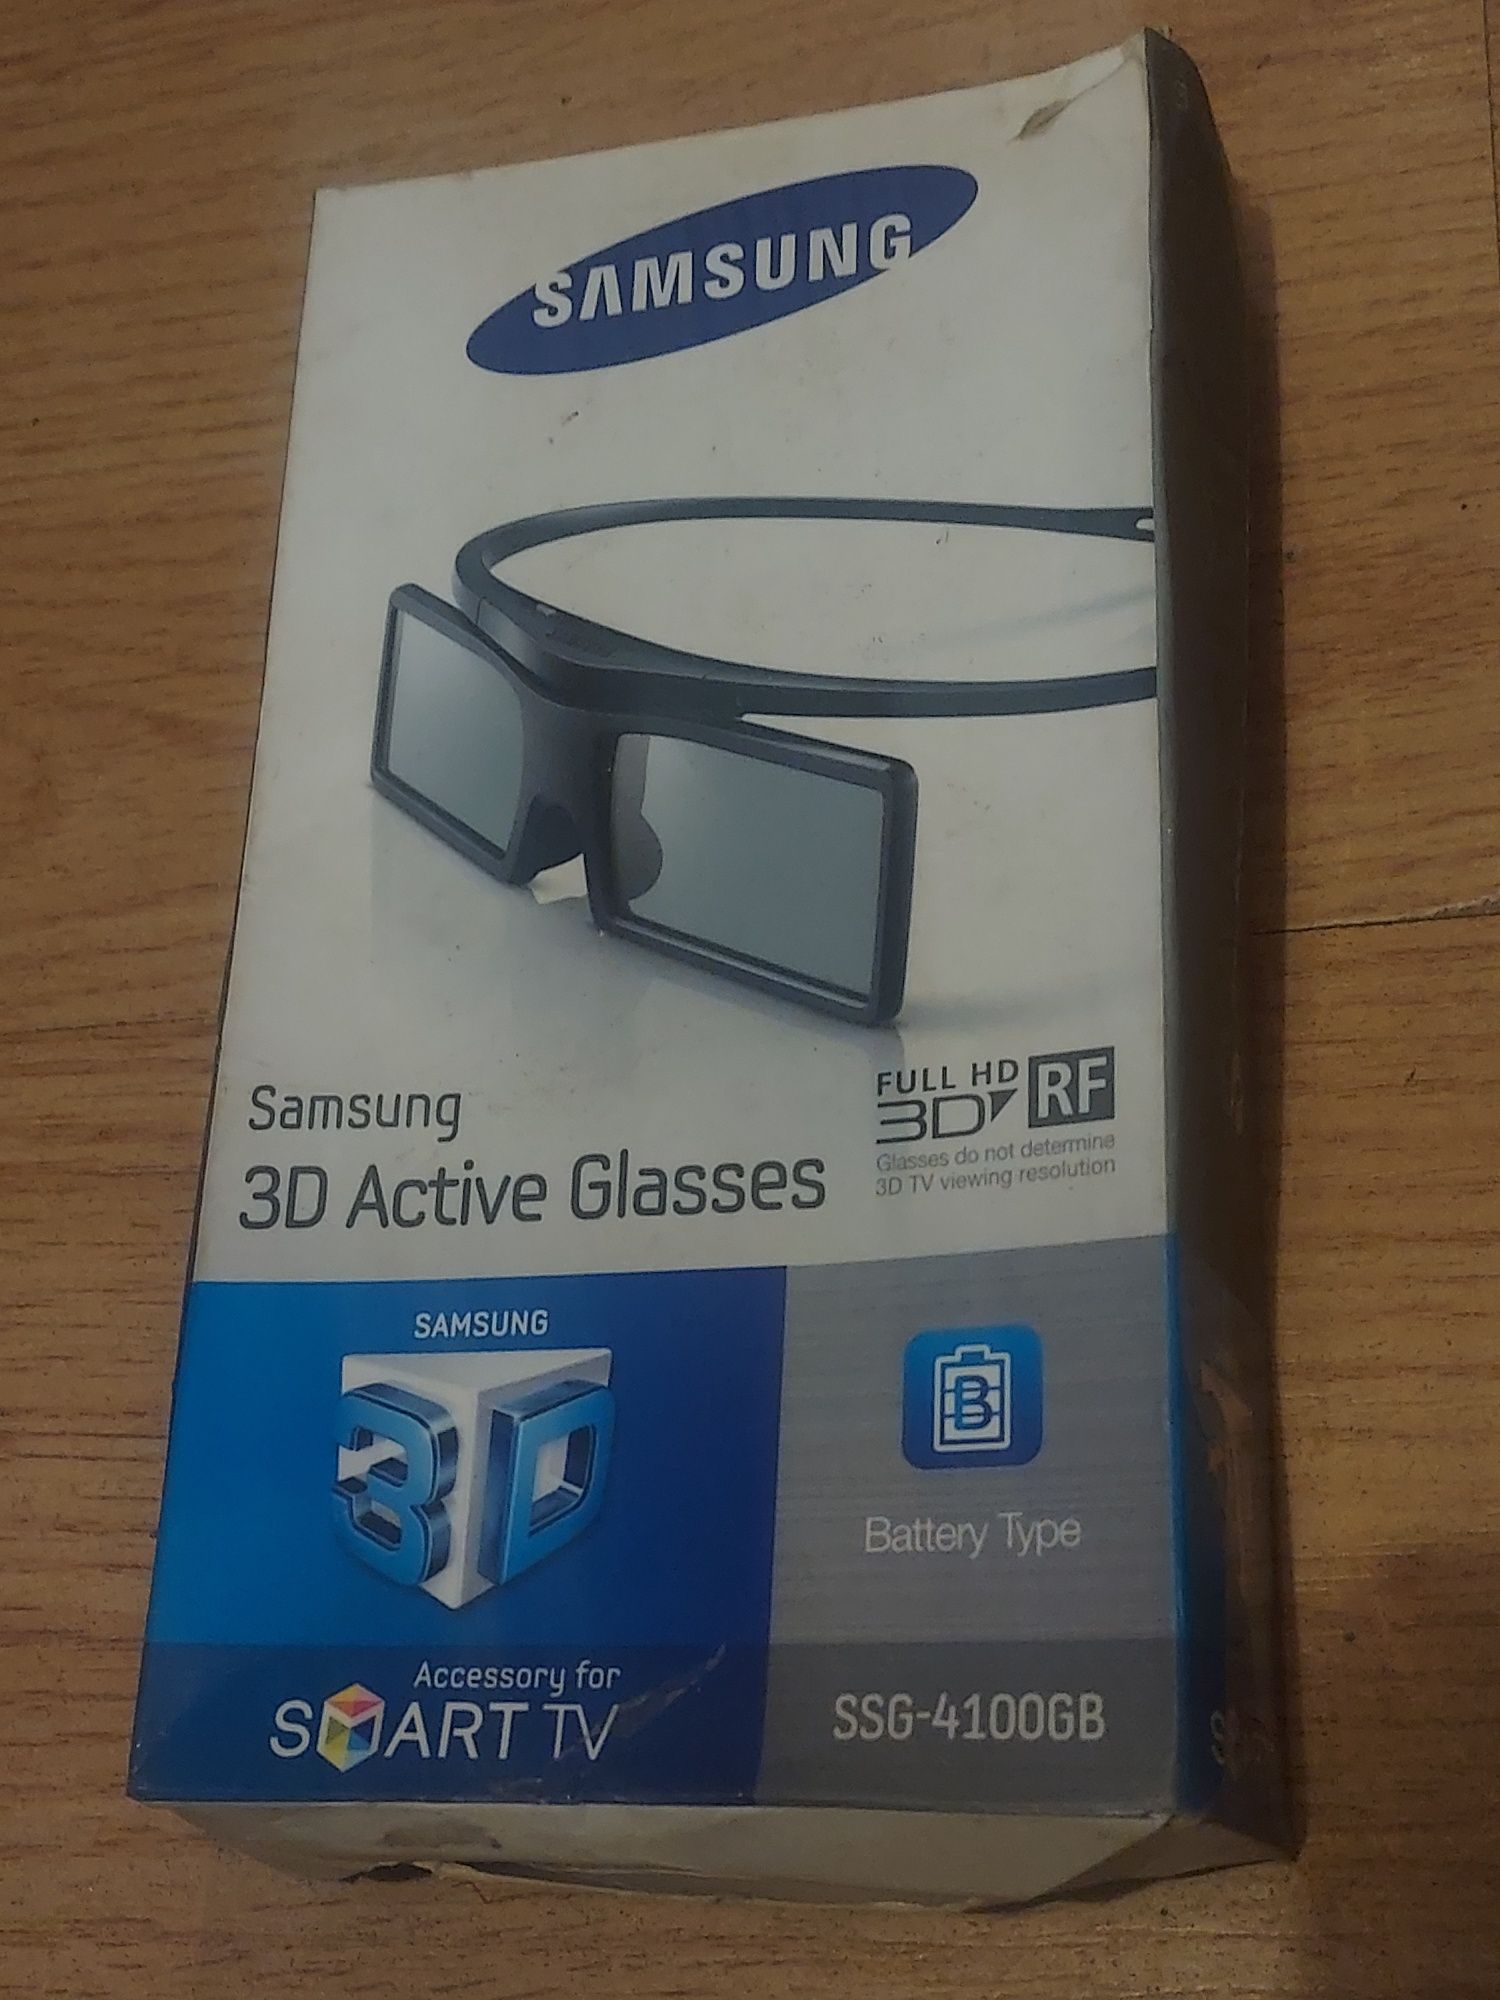 Ochelari 3D ActiveGlasses Samsung SSG 4100GB